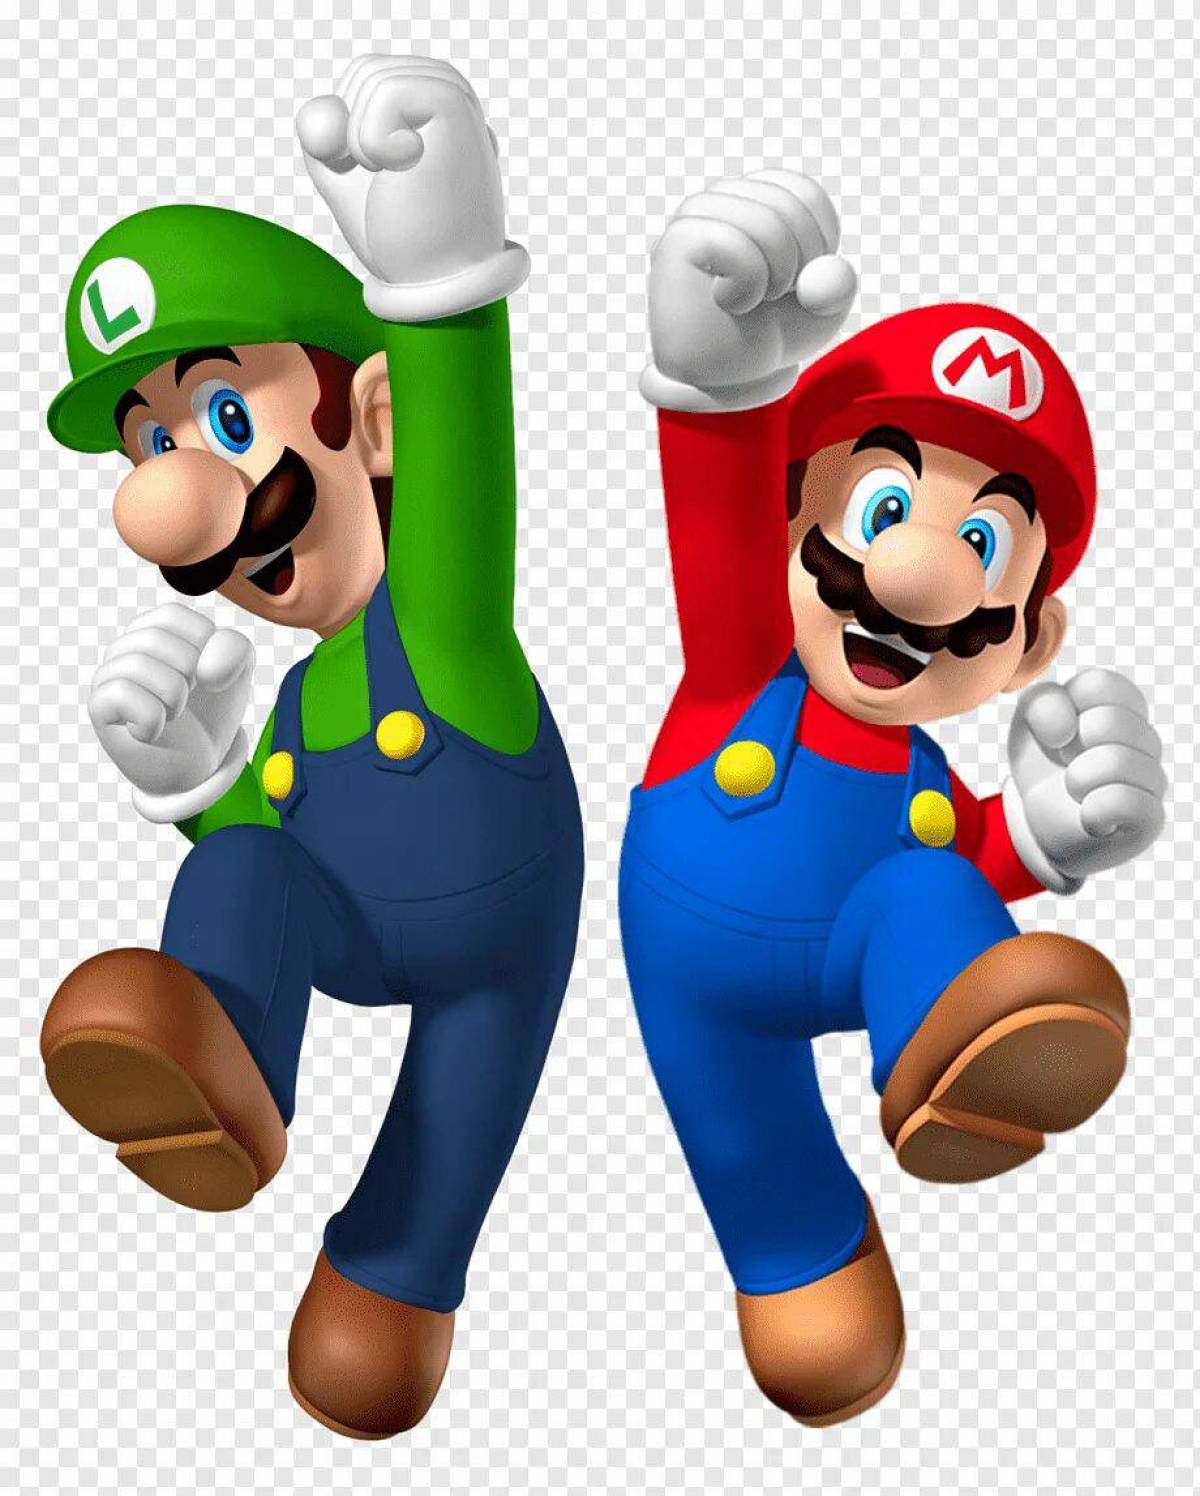 Mario brothers. Марио и Луиджи. Супер братья Марио Луиджи. Луиджи брат Марио. Супер Марио и Луиджи игра.